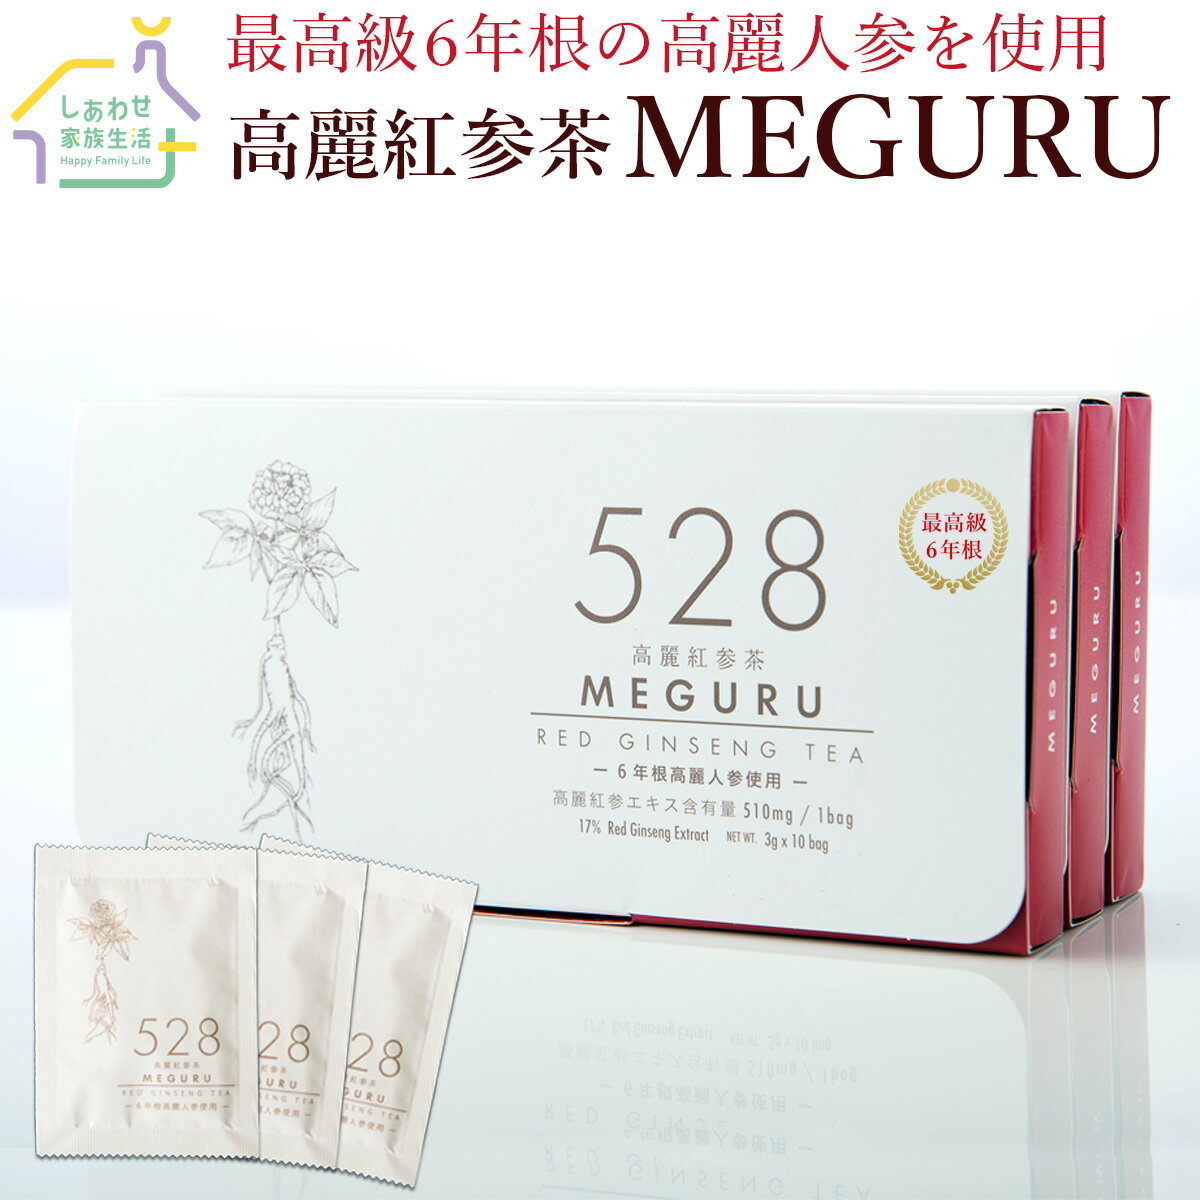 528高麗紅参茶 MEGURU 1箱30包 高麗人参茶 体温アップ 妊活 更年期